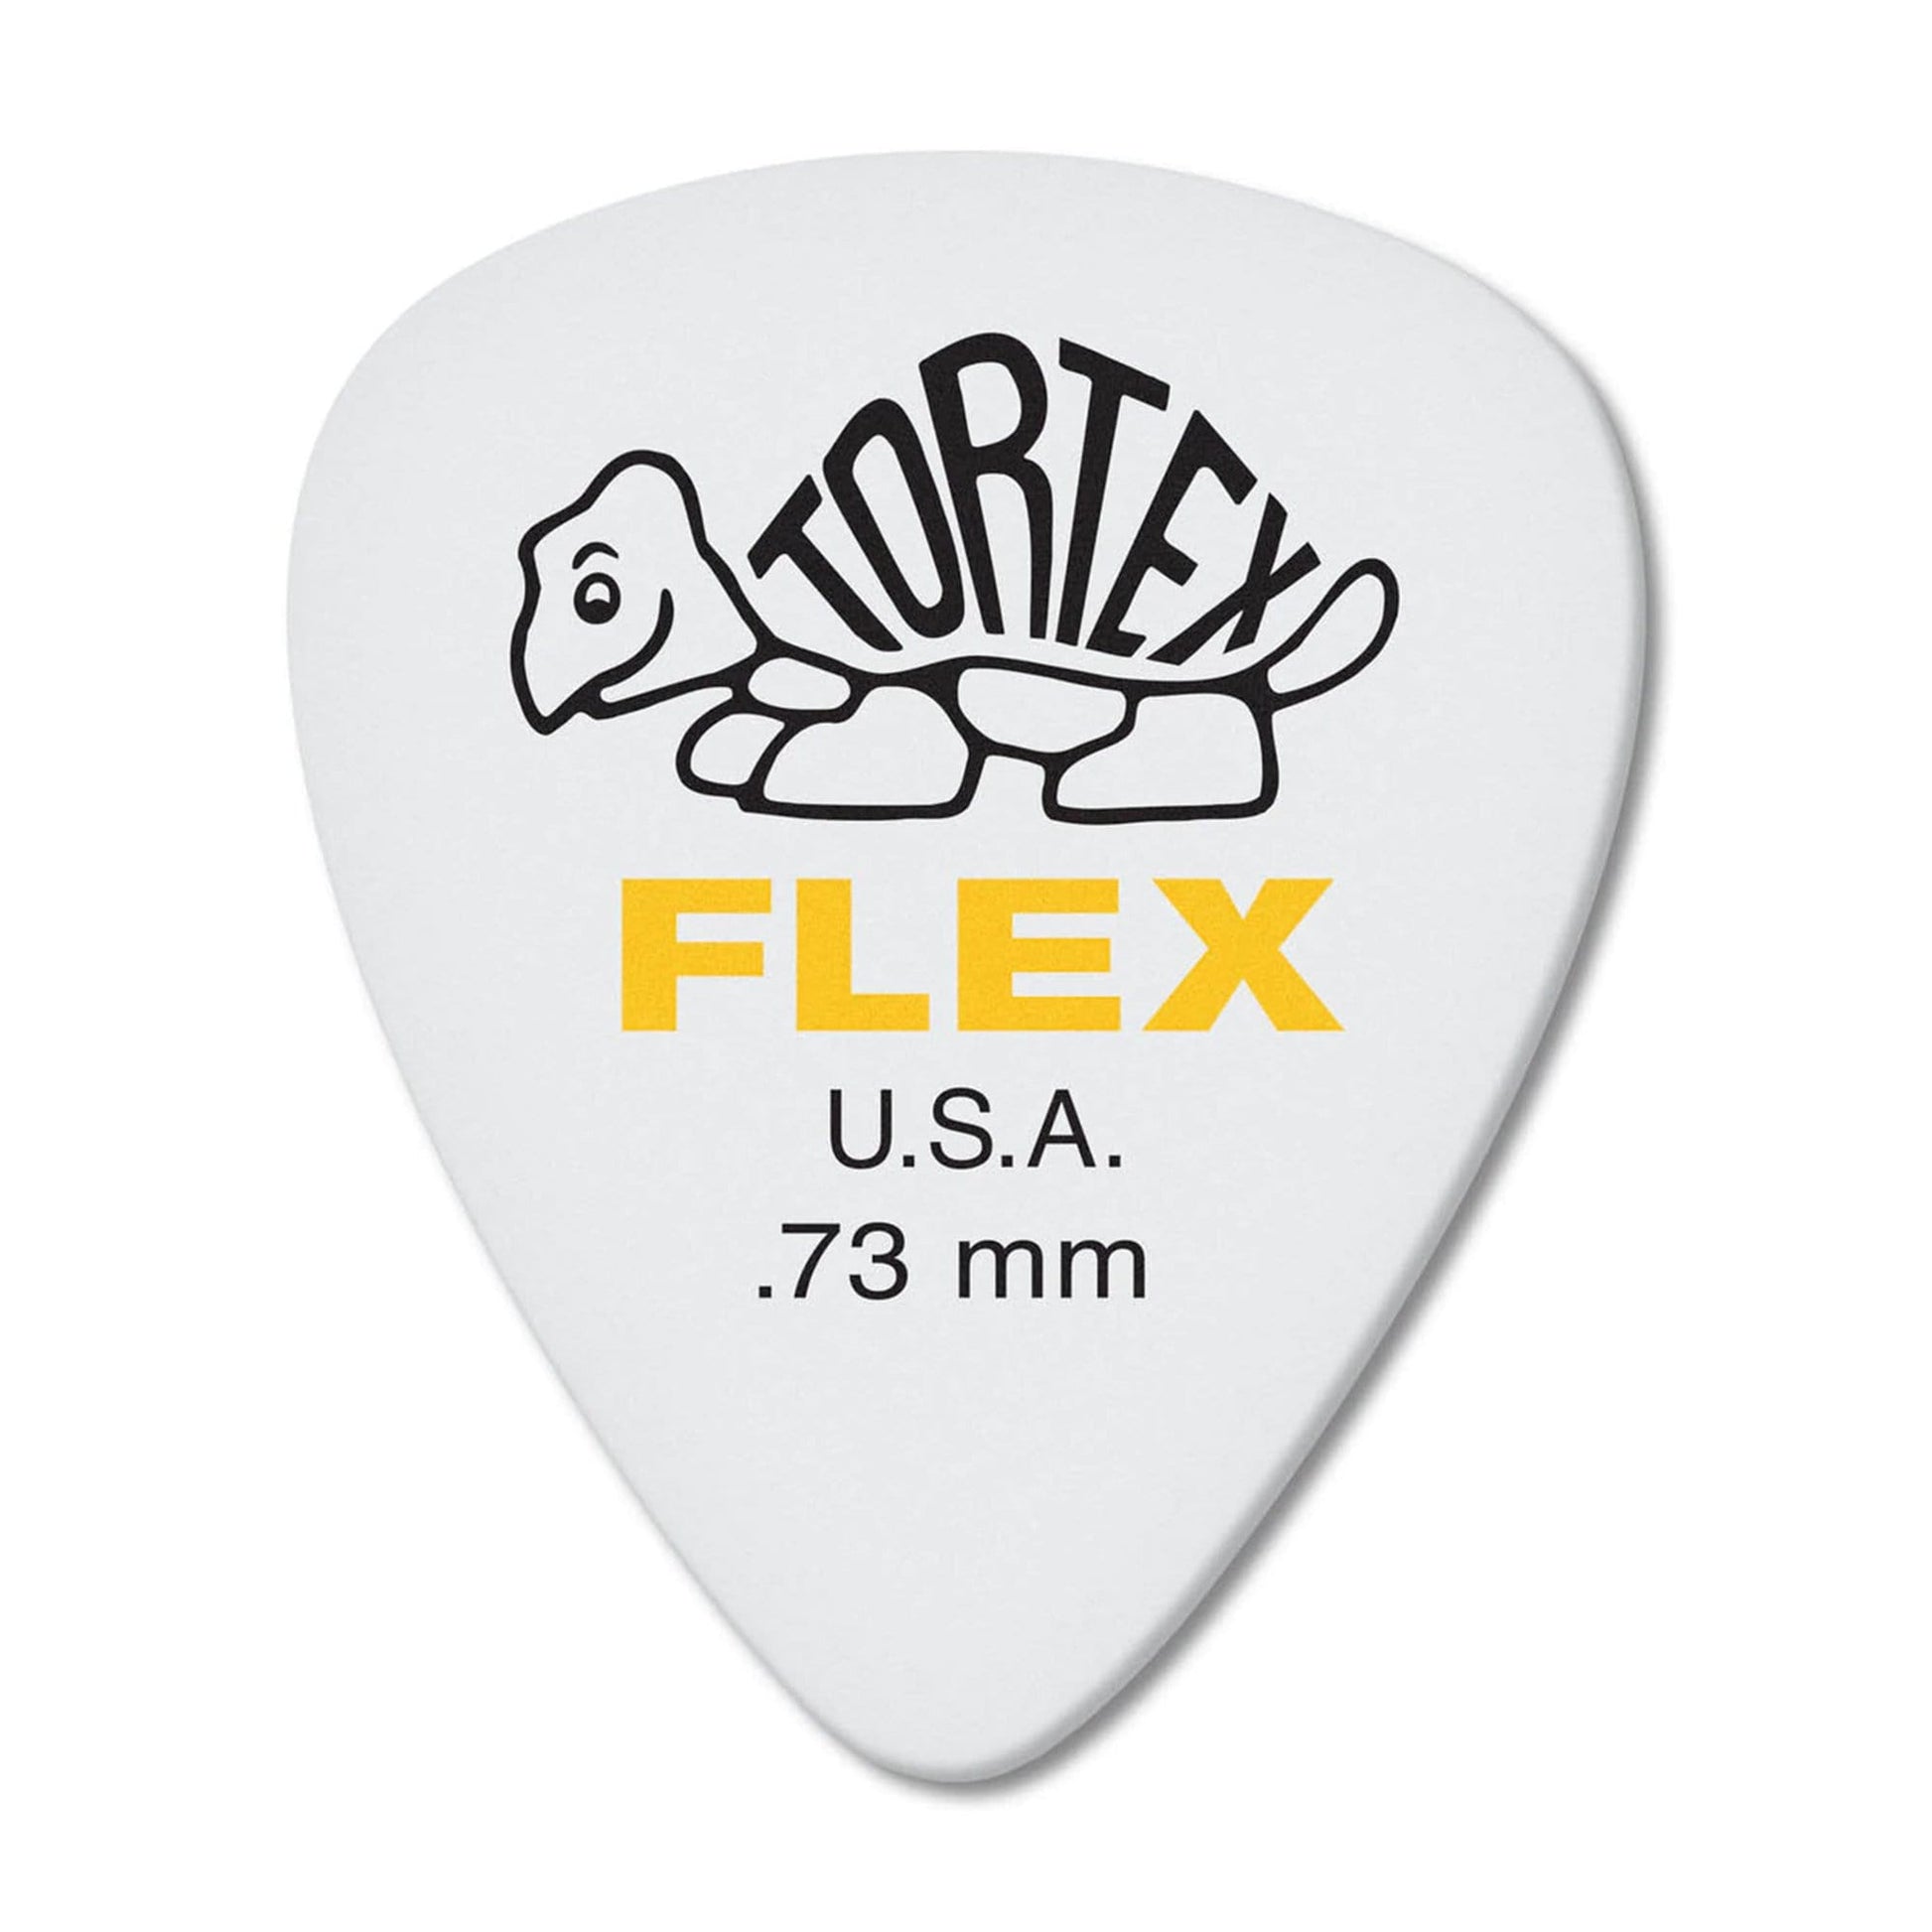 Dunlop Tortex Flex Standard Guitar Picks .73mm Player Pack 3 Pack (36) Bundle Accessories / Picks